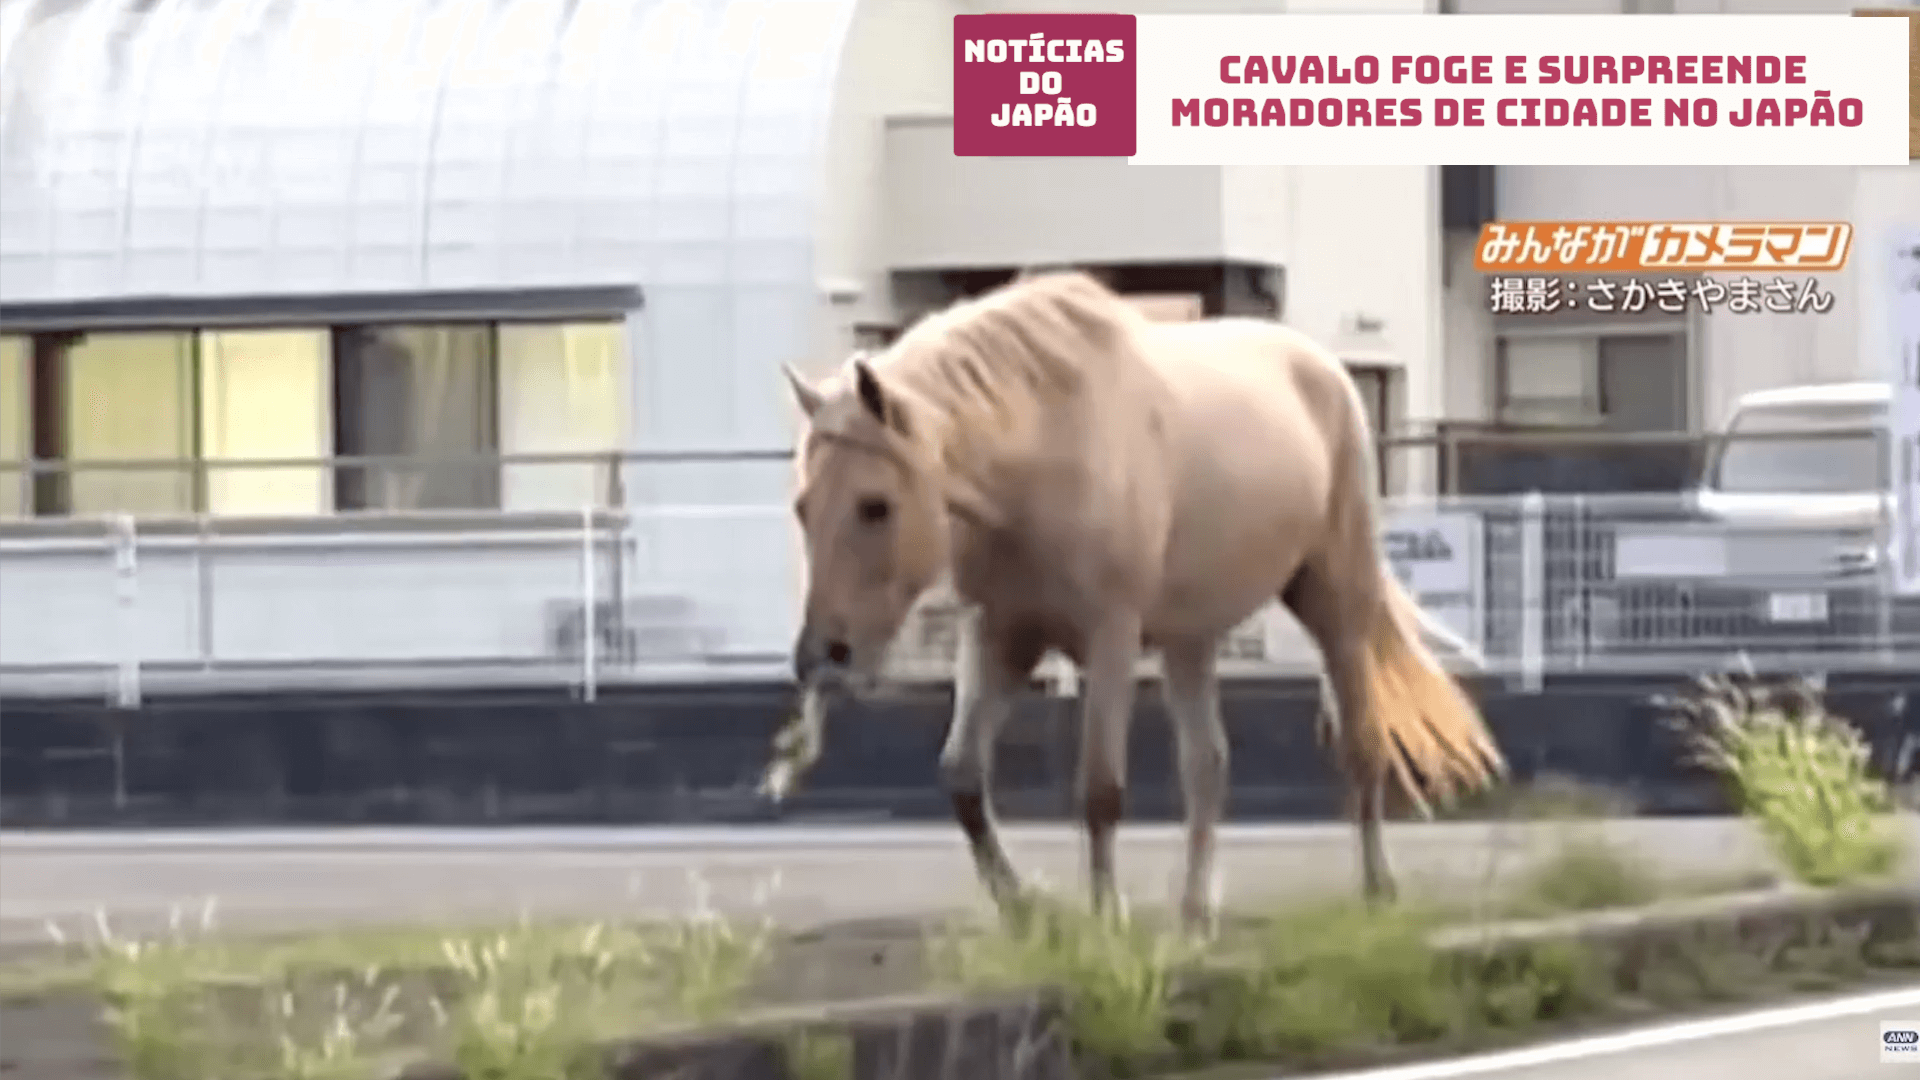 Cavalo foge e surpreende moradores de cidade no Japão 